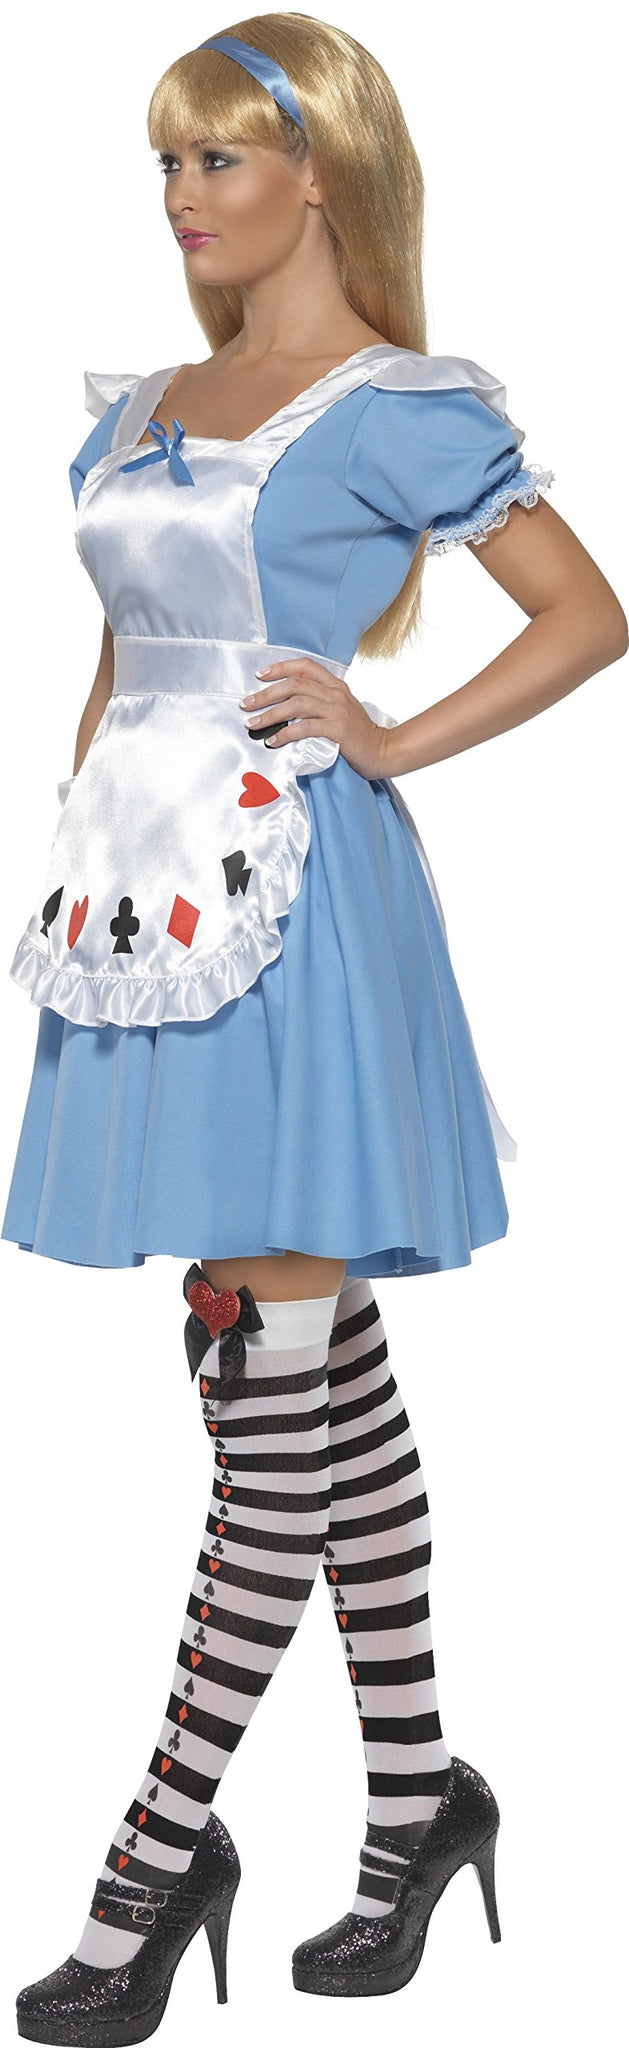 Smiffy's 355 602 - Costume per Travestimento da Alice nel Paese